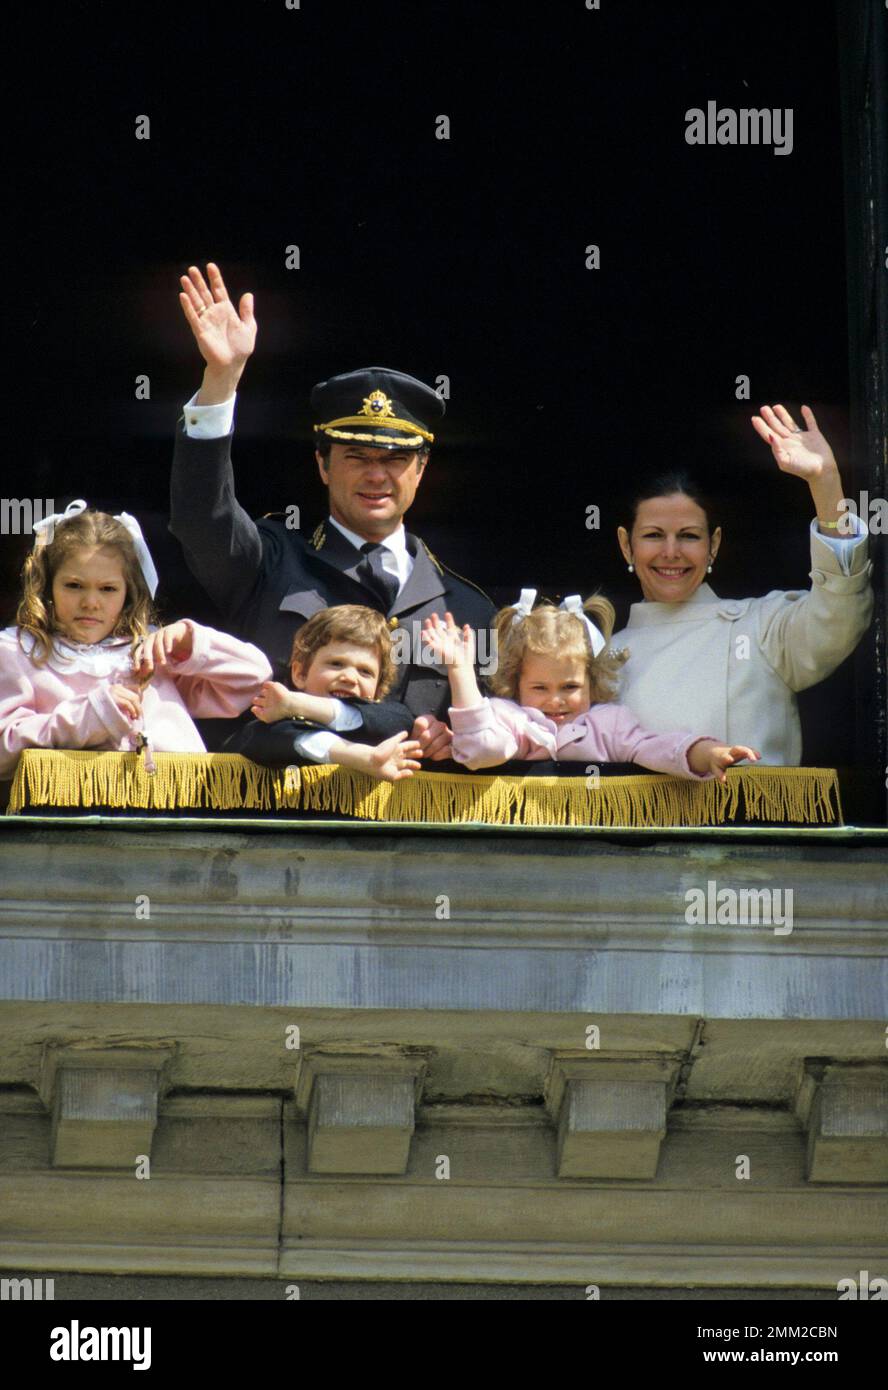 Carl XVI Gustaf, roi de Suède. Né le 30 avril 1946. Le roi Carl XVI Gustaf dans une fenêtre du château royal de Stockholm le jour de son anniversaire de 40th le 30 avril 1986. La reine Silvia avec leurs enfants Victoria, Carl Philip et Madeleine. Banque D'Images